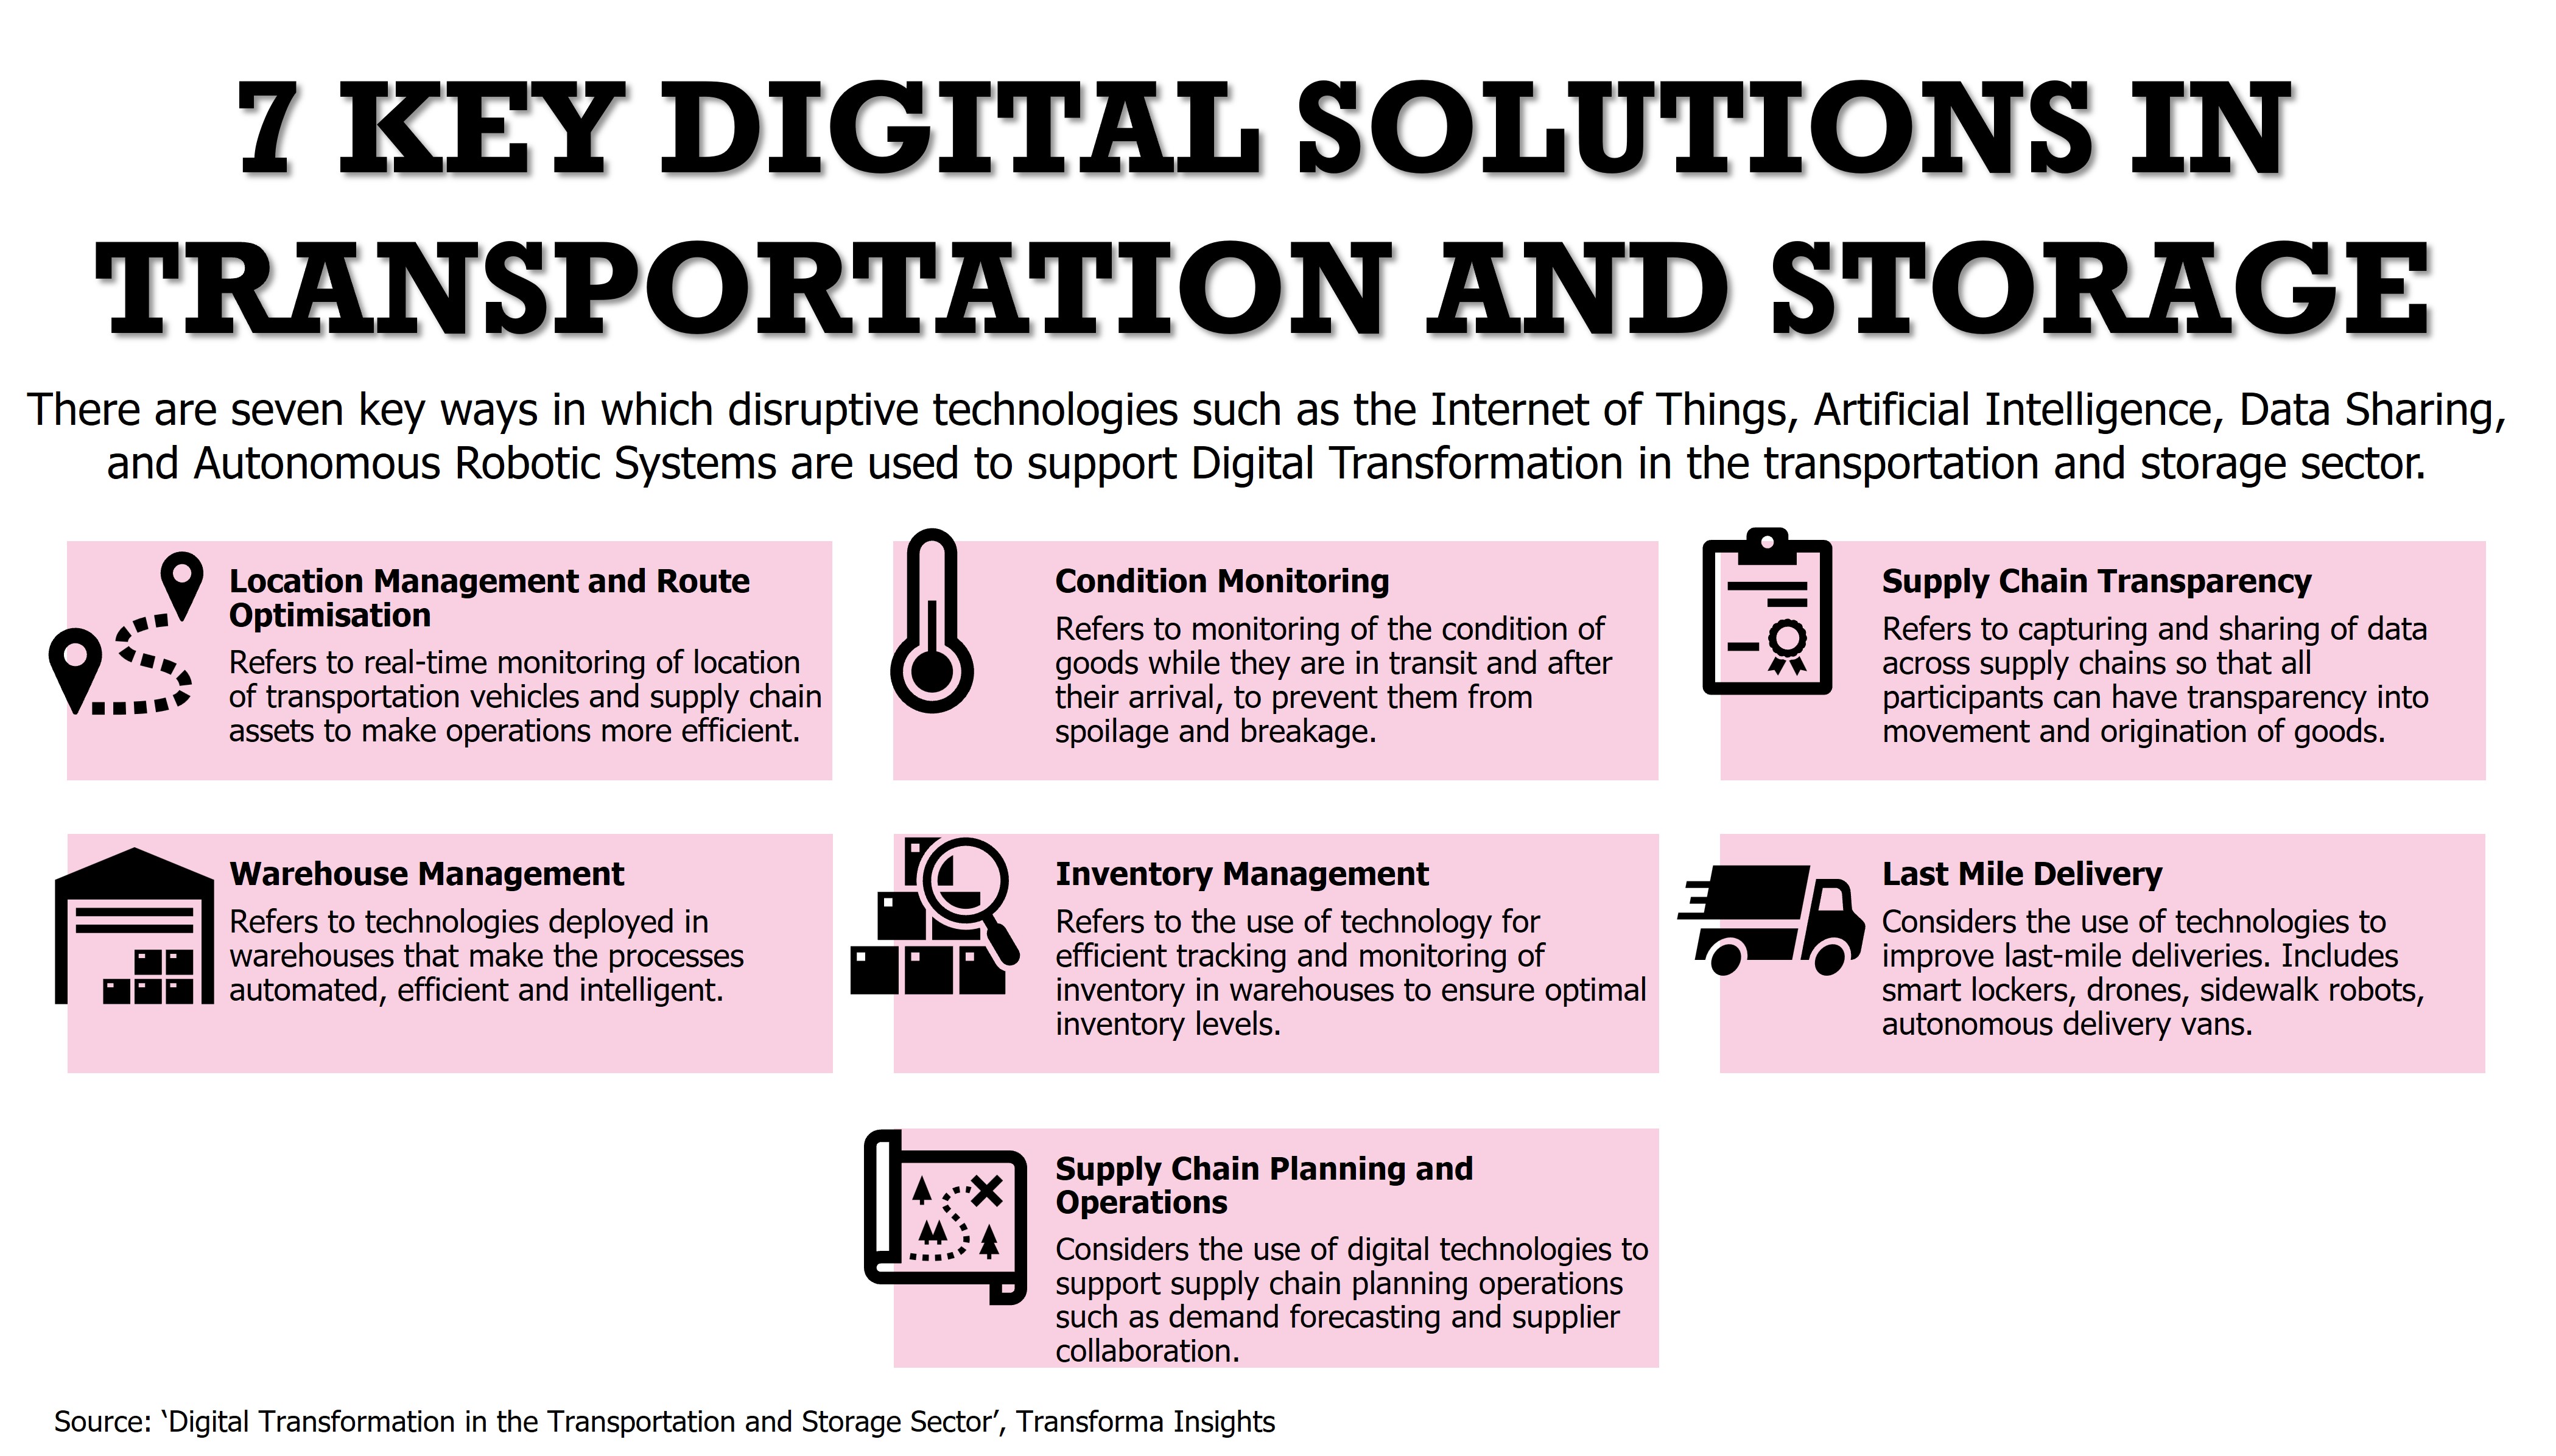 digital-solutions-transportation-storage.jpg